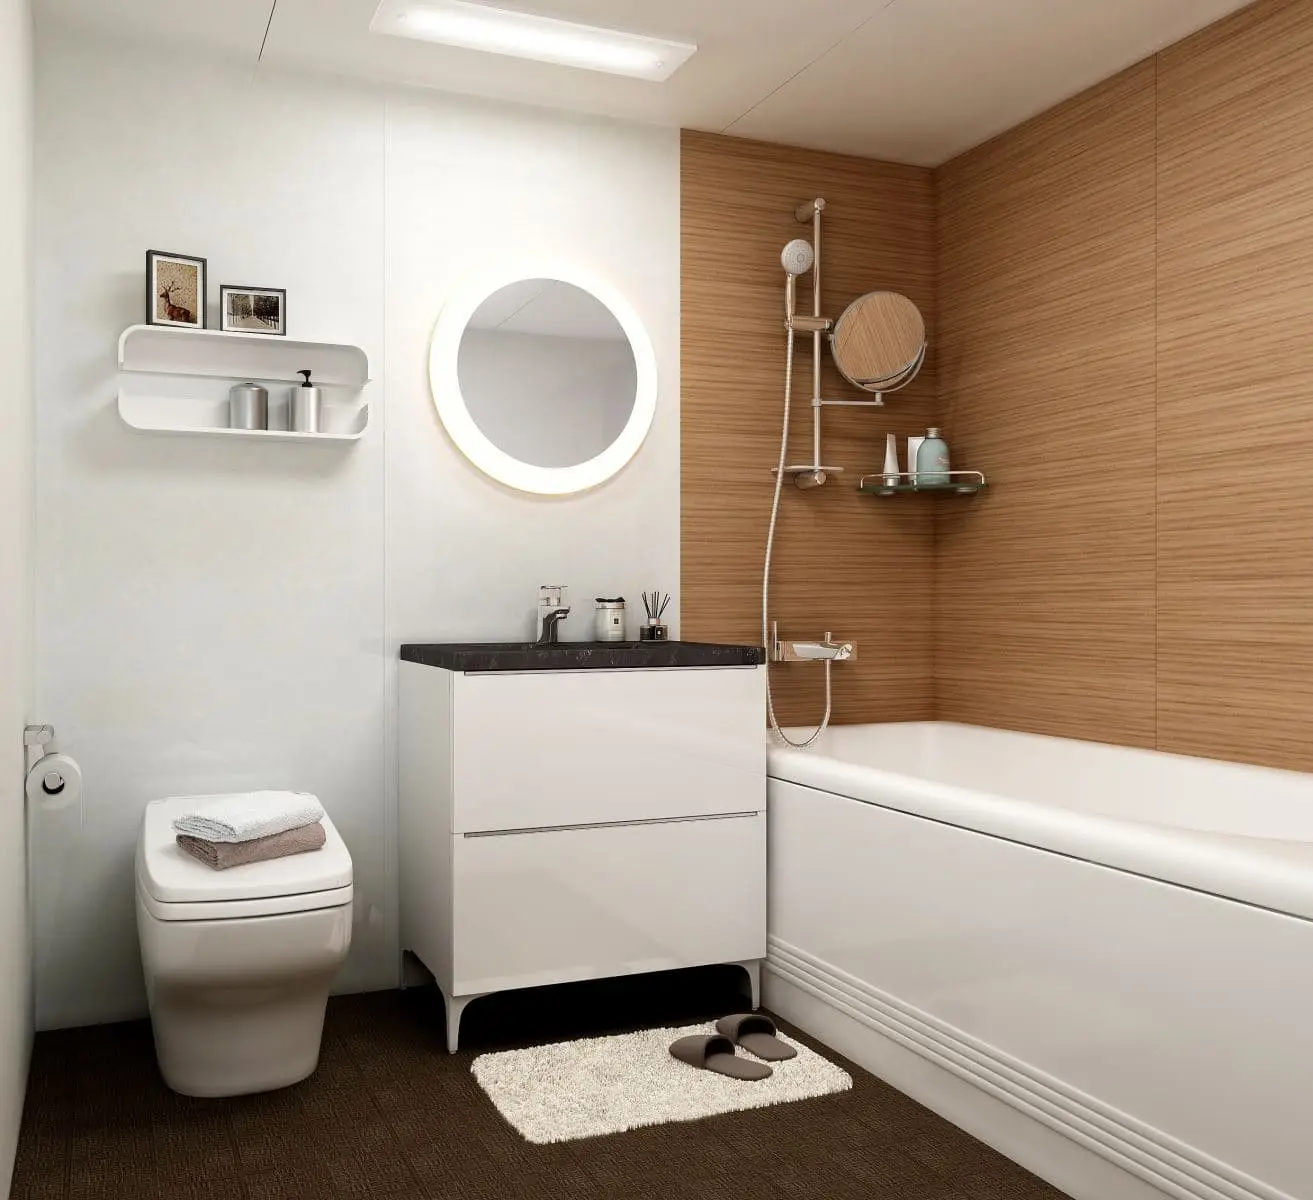 Tìm hiểu đơn vị thiết kế nhà vệ sinh hiện đại uy tín 